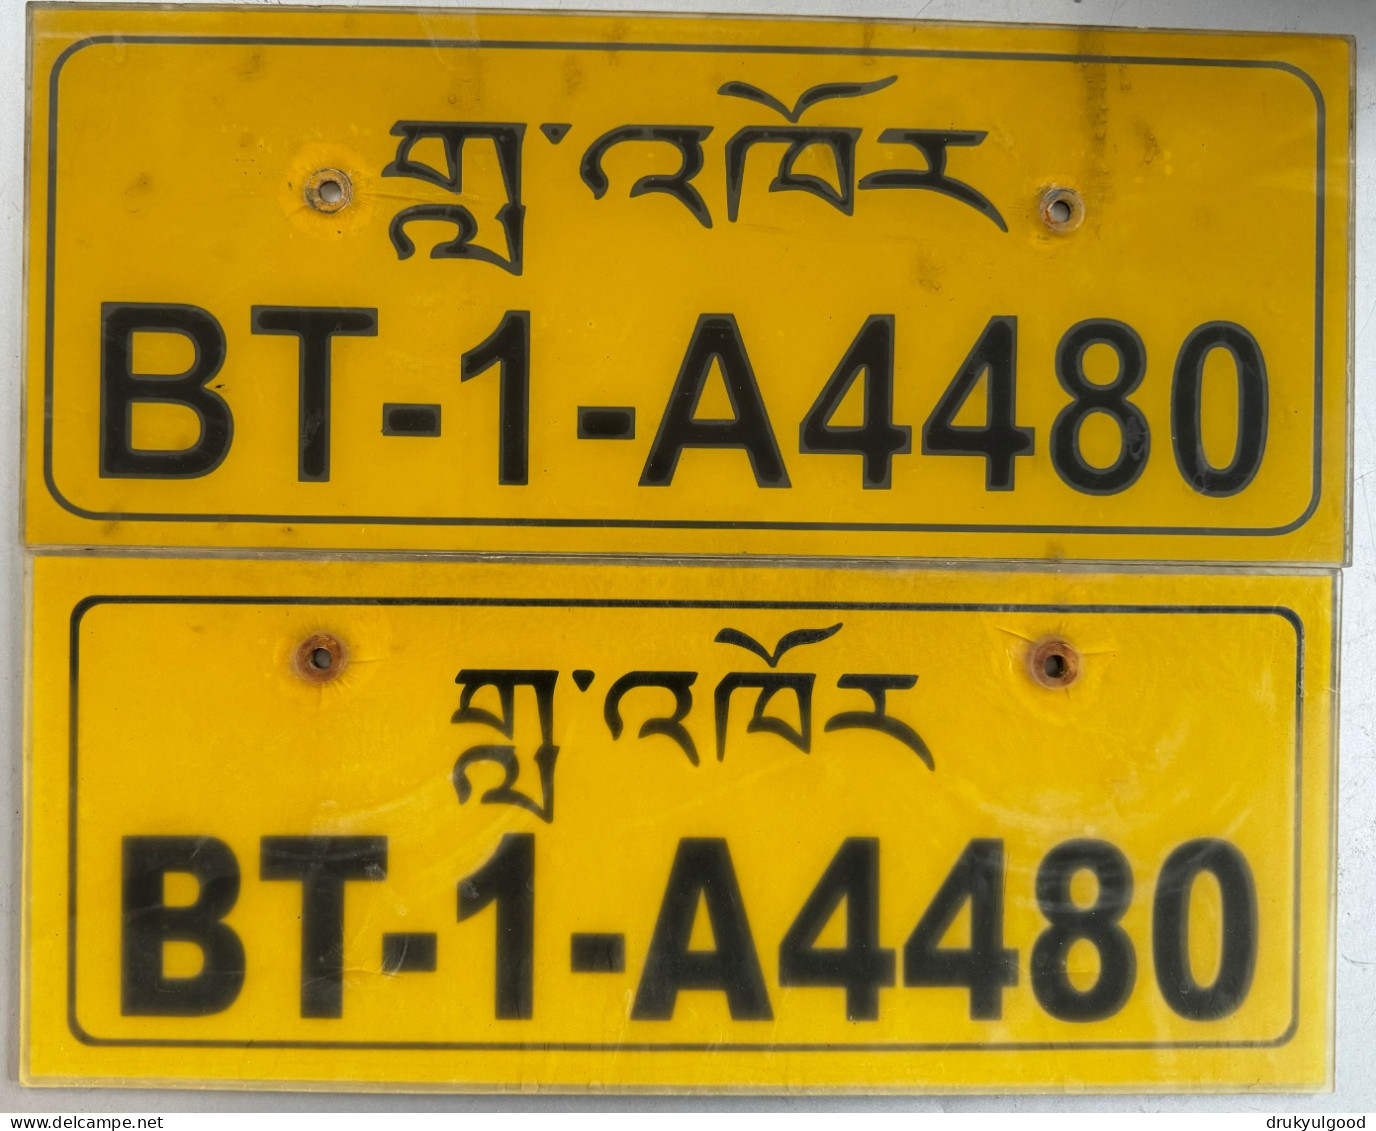 BHUTAN Western Region Taxi Plate On Plastic Pair BT-1-A4480 - Kennzeichen & Nummernschilder